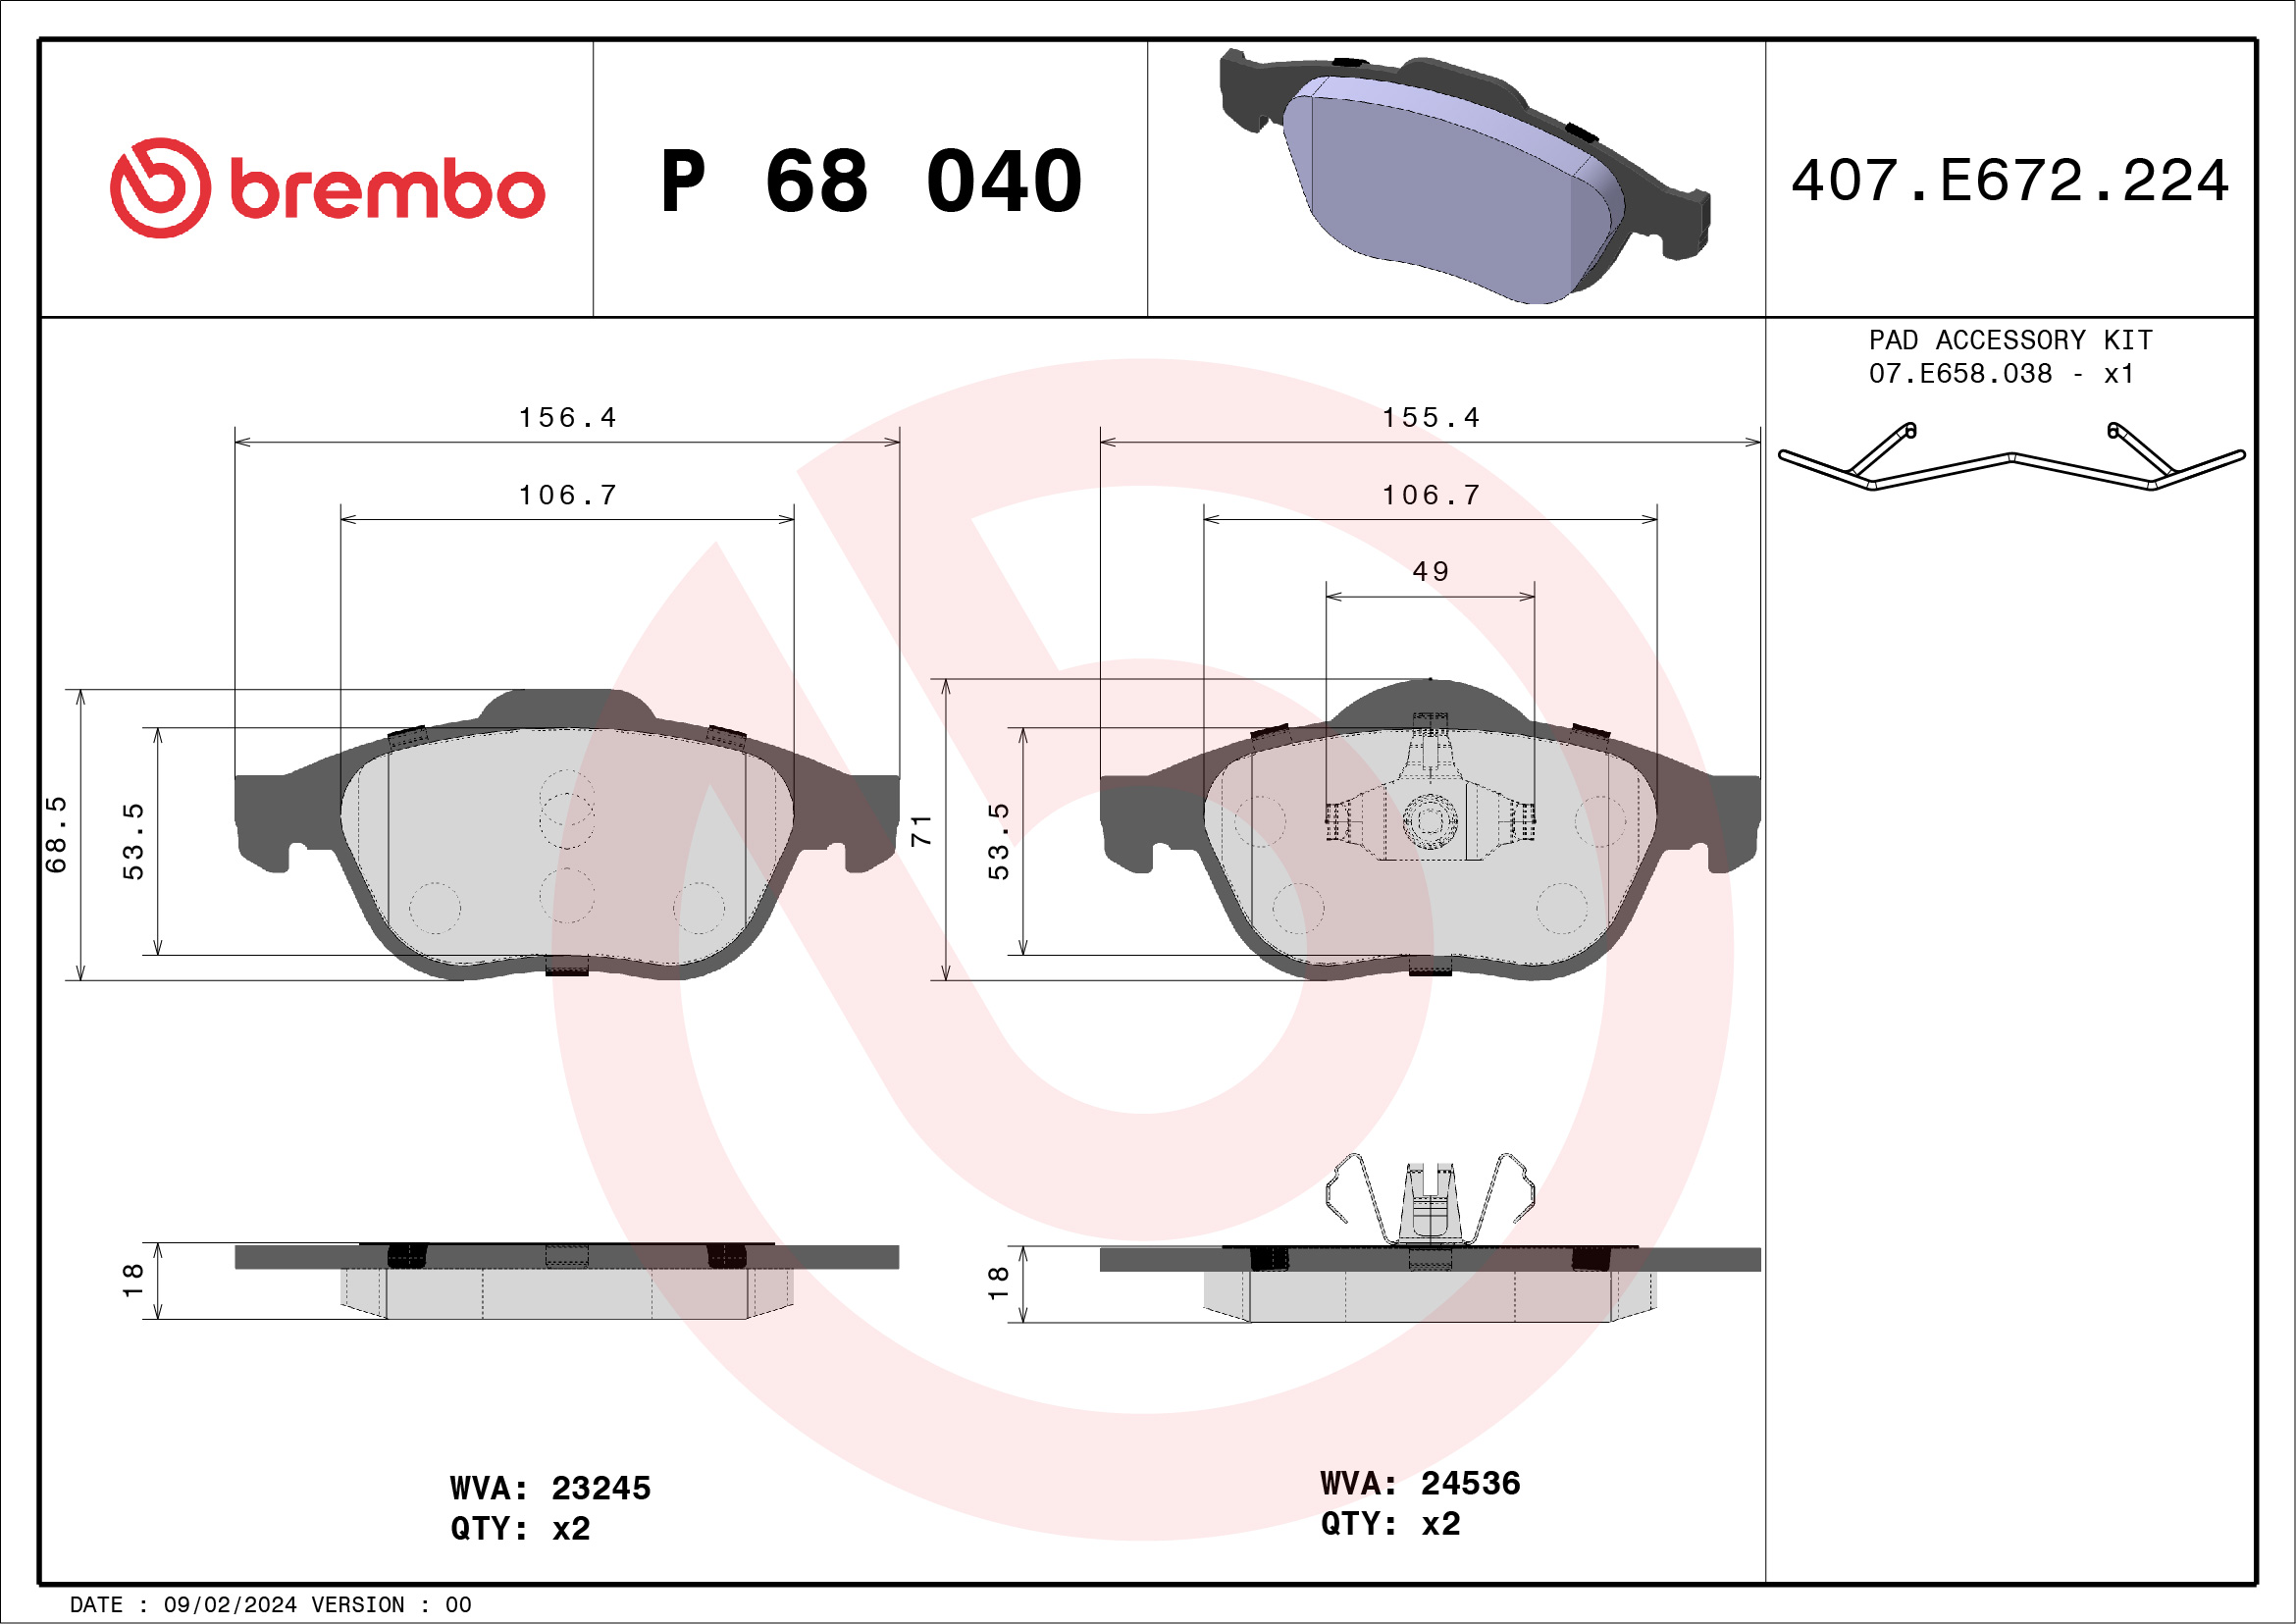 BREMBO P 68 040 Kit...